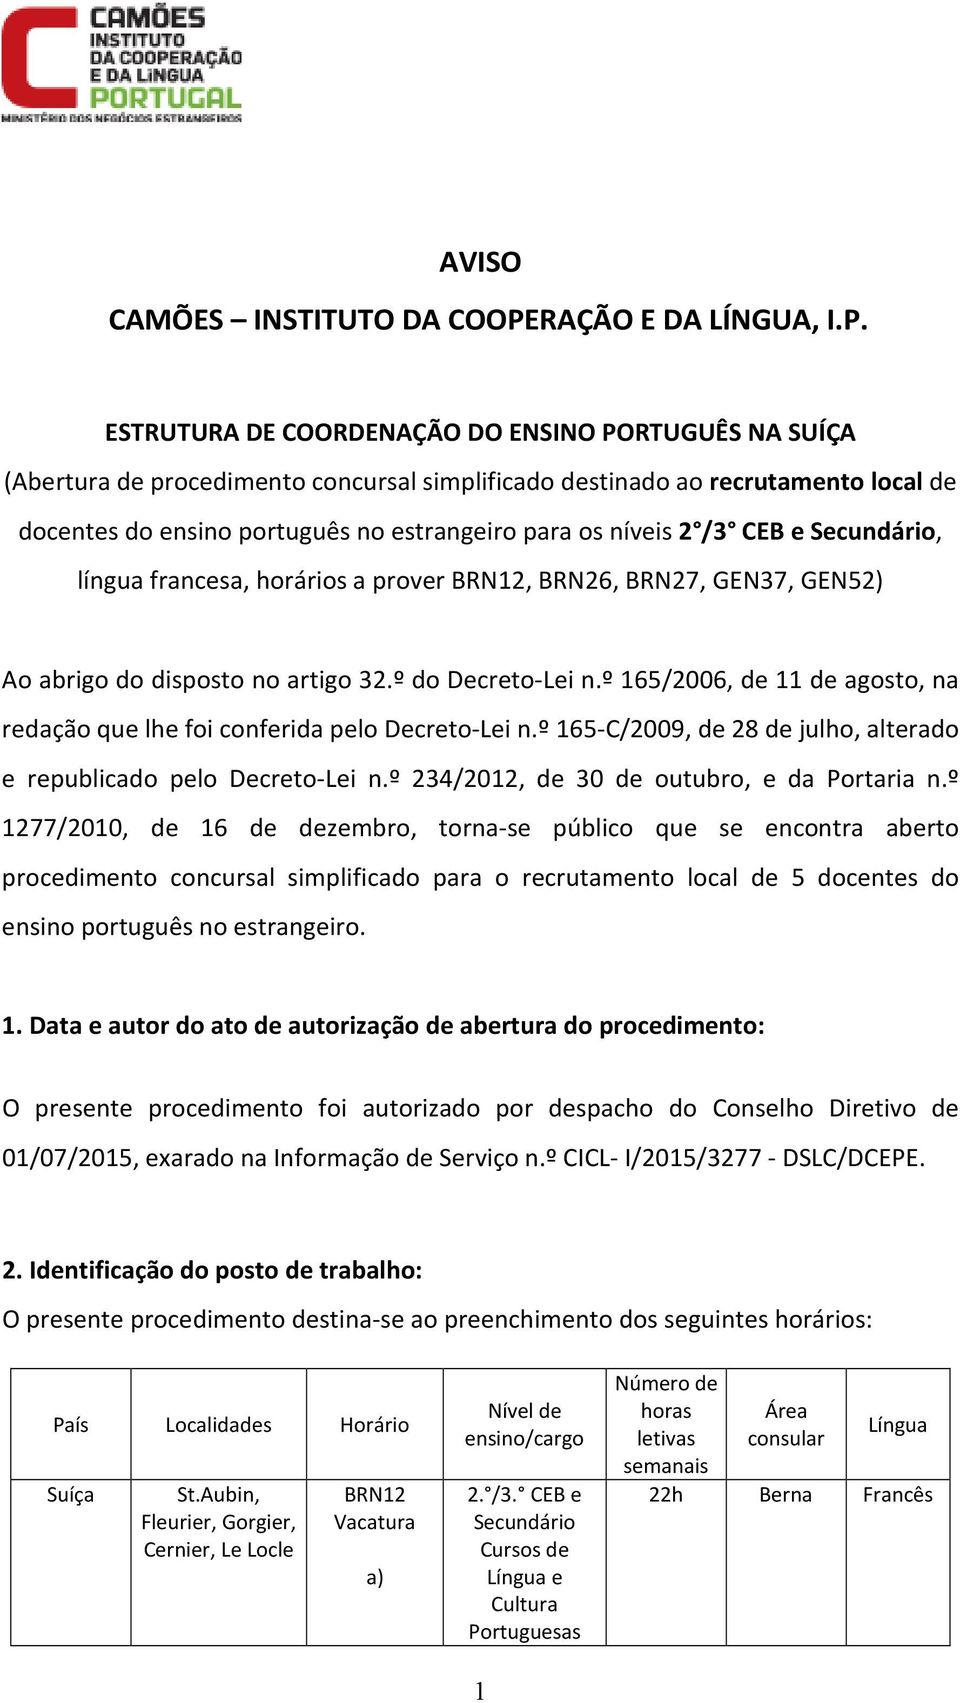 ESTRUTURA DE COORDENAÇÃO DO ENSINO PORTUGUÊS NA SUÍҪA (Abertura de procedimento concursal simplificado destinado ao recrutamento local de docentes do ensino português no estrangeiro para os níveis 2